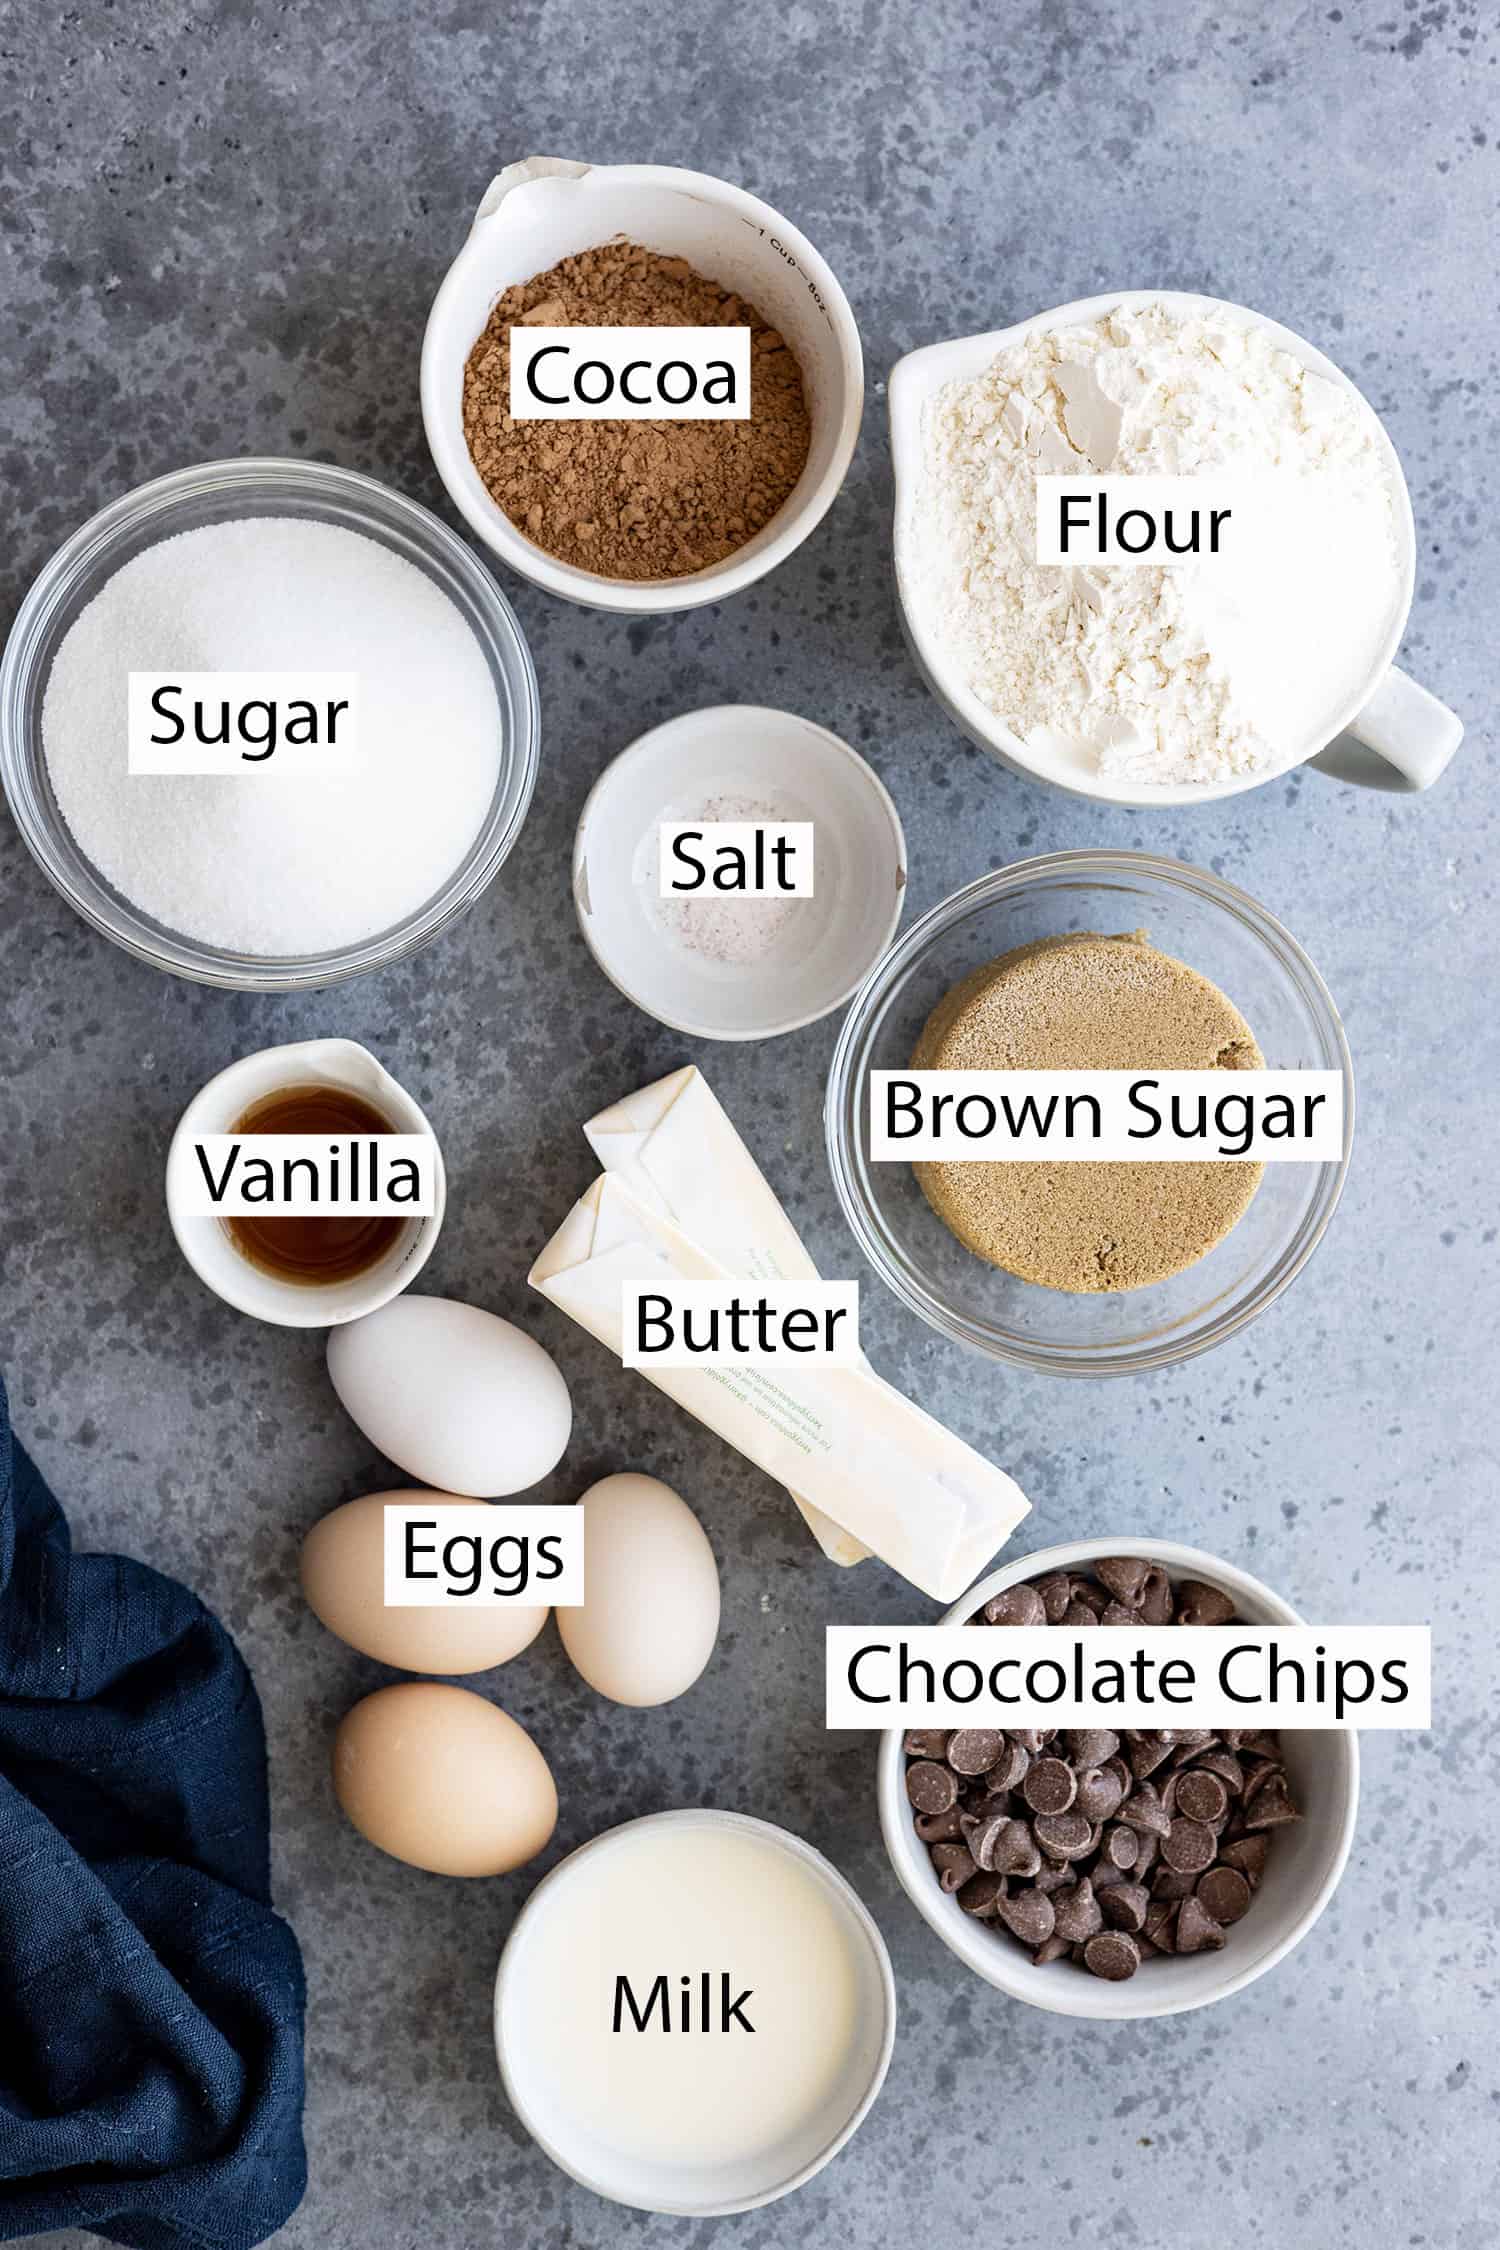 Ingredients: cocoa, flour, sugar, salt, brown sugar, vanilla, butter, eggs, chocolate chips, milk. 